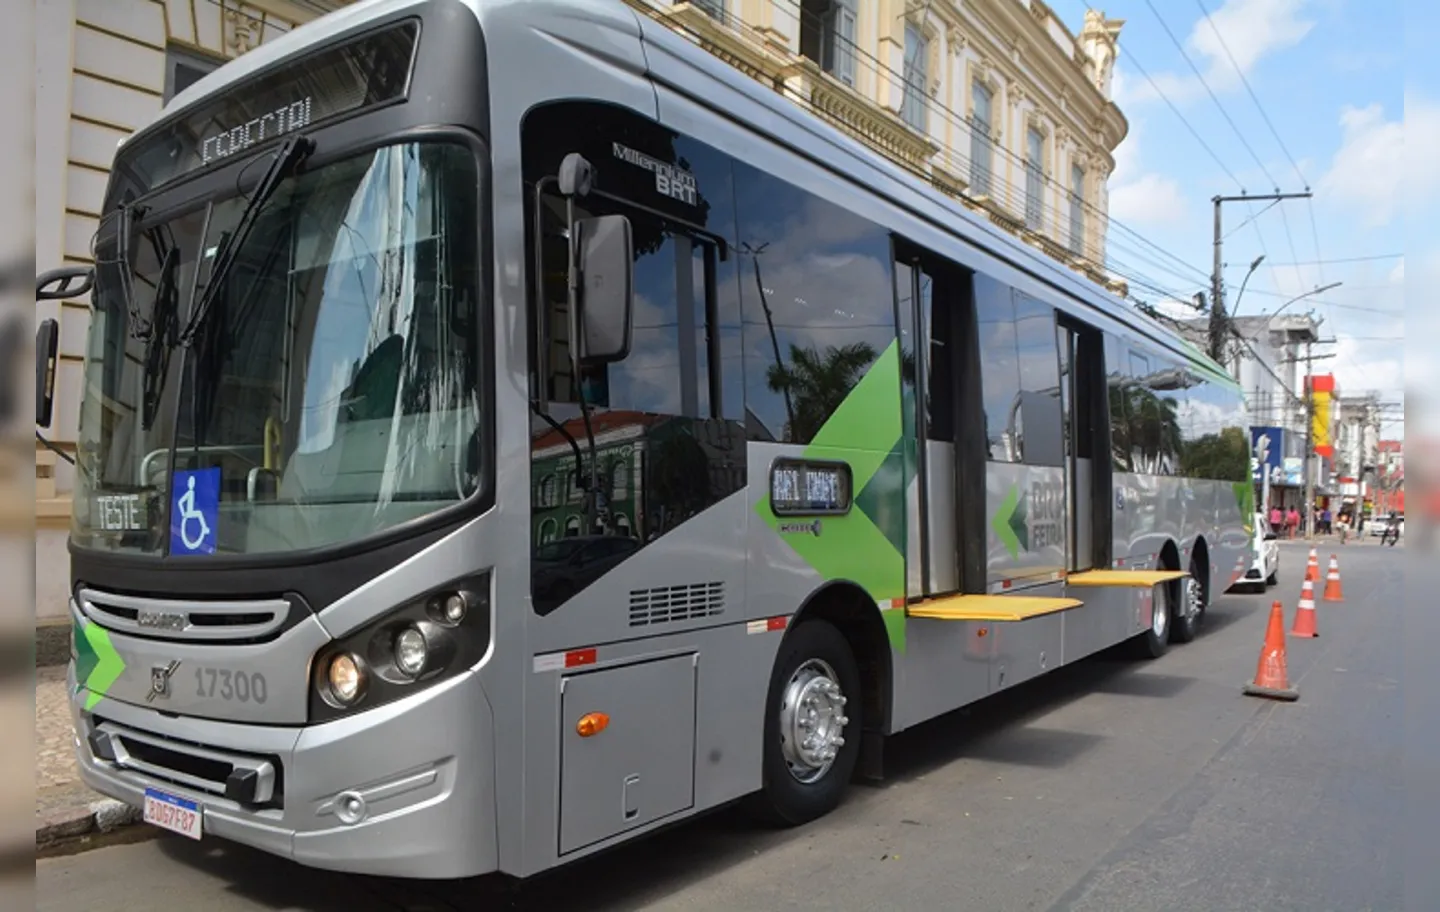 De acordo com parlamentar, BRT funciona de "forma confusa" em Feira de Santana